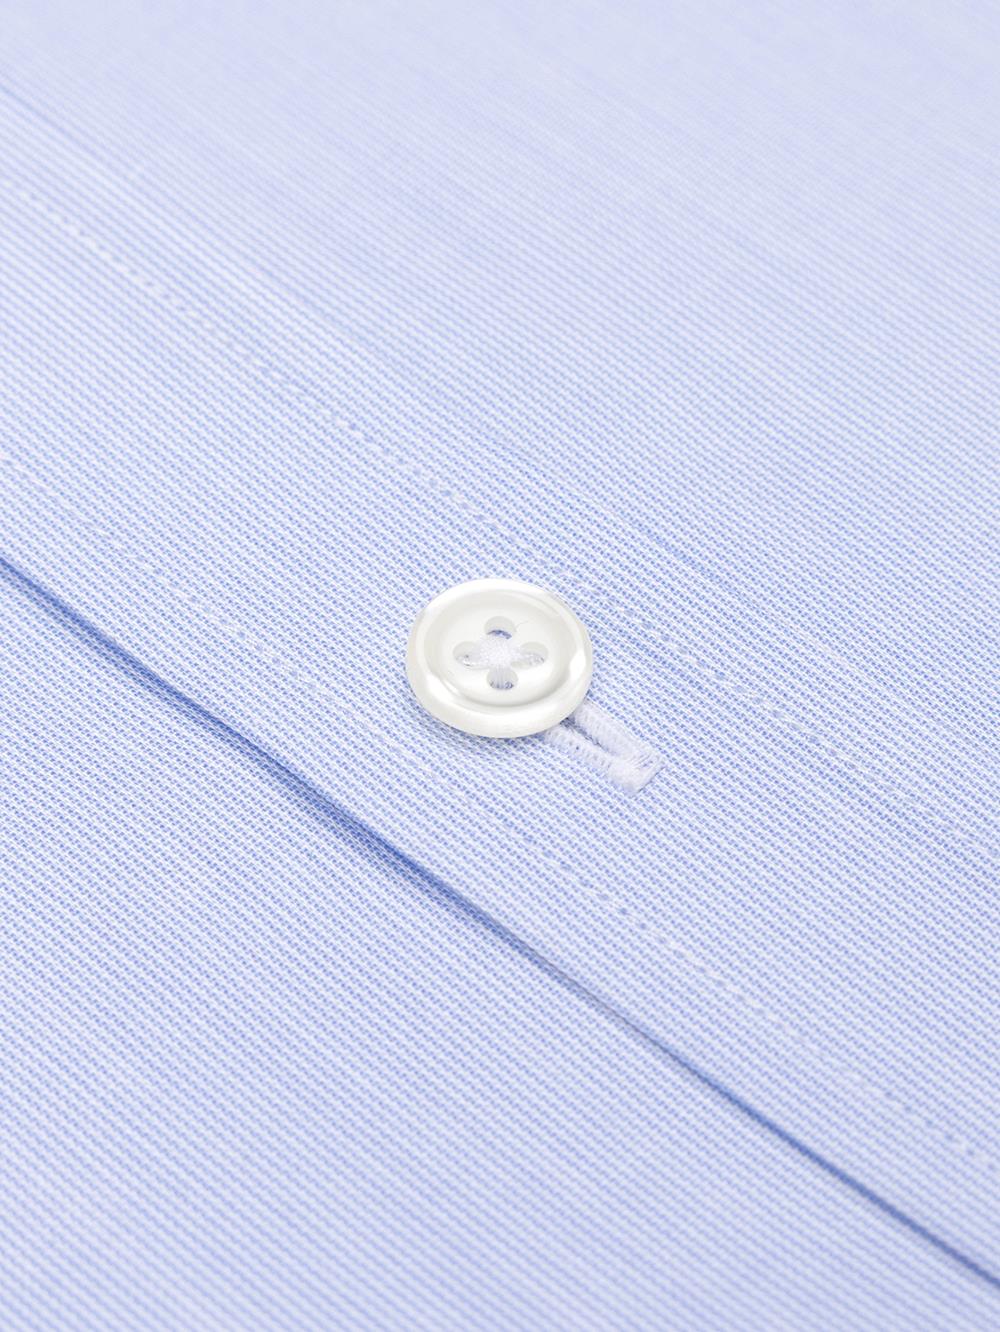 Tailliertes Tailliertes Hemd mit tausend Streifen himmelblau - Buttondown Kragen